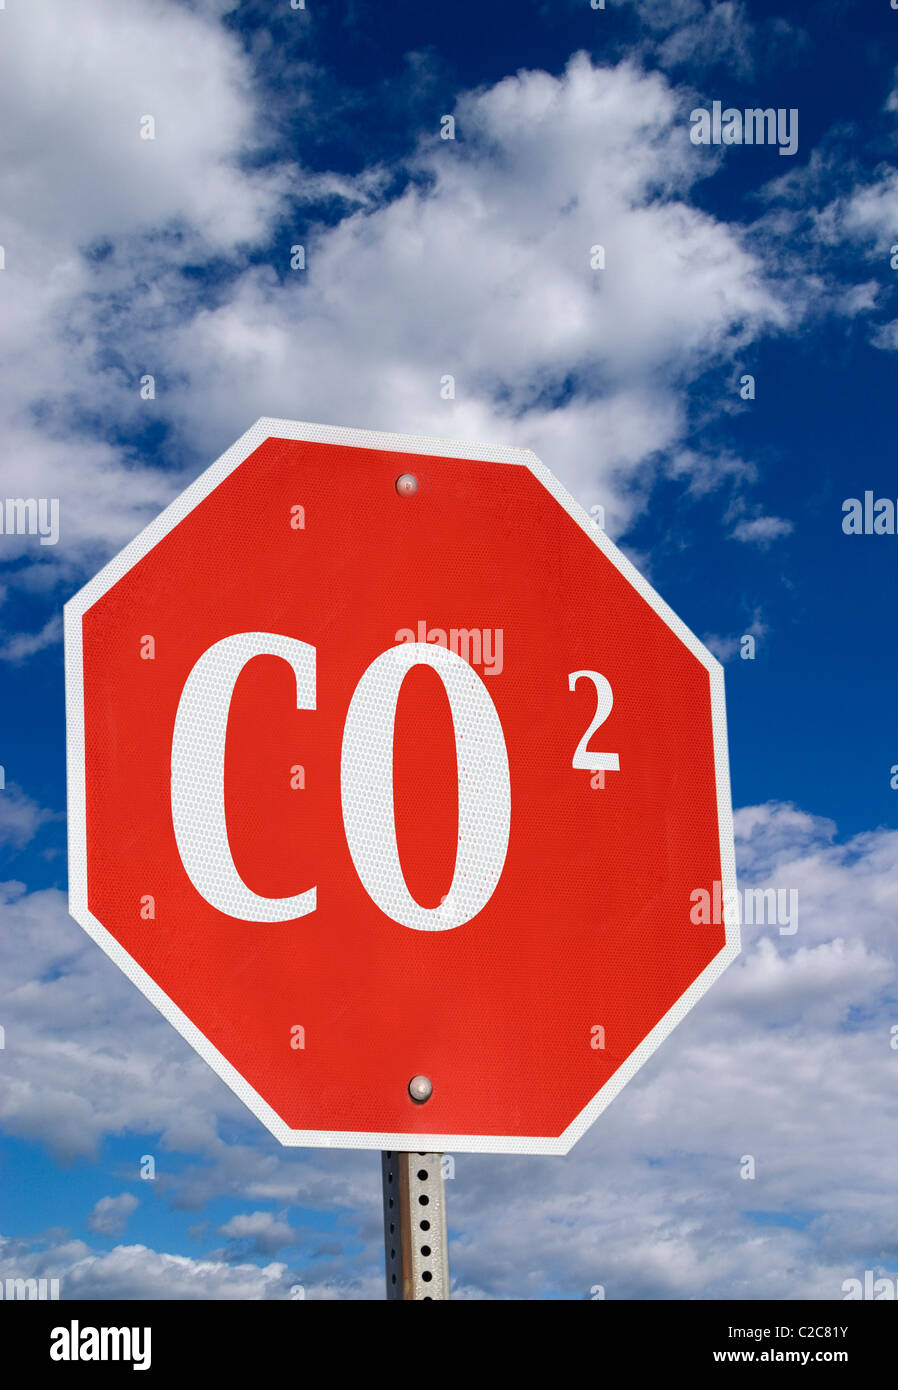 Stoppen Sie globale Erwärmung zu und kontrollieren Sie Ihren CO2-Fußabdruck. Stockfoto